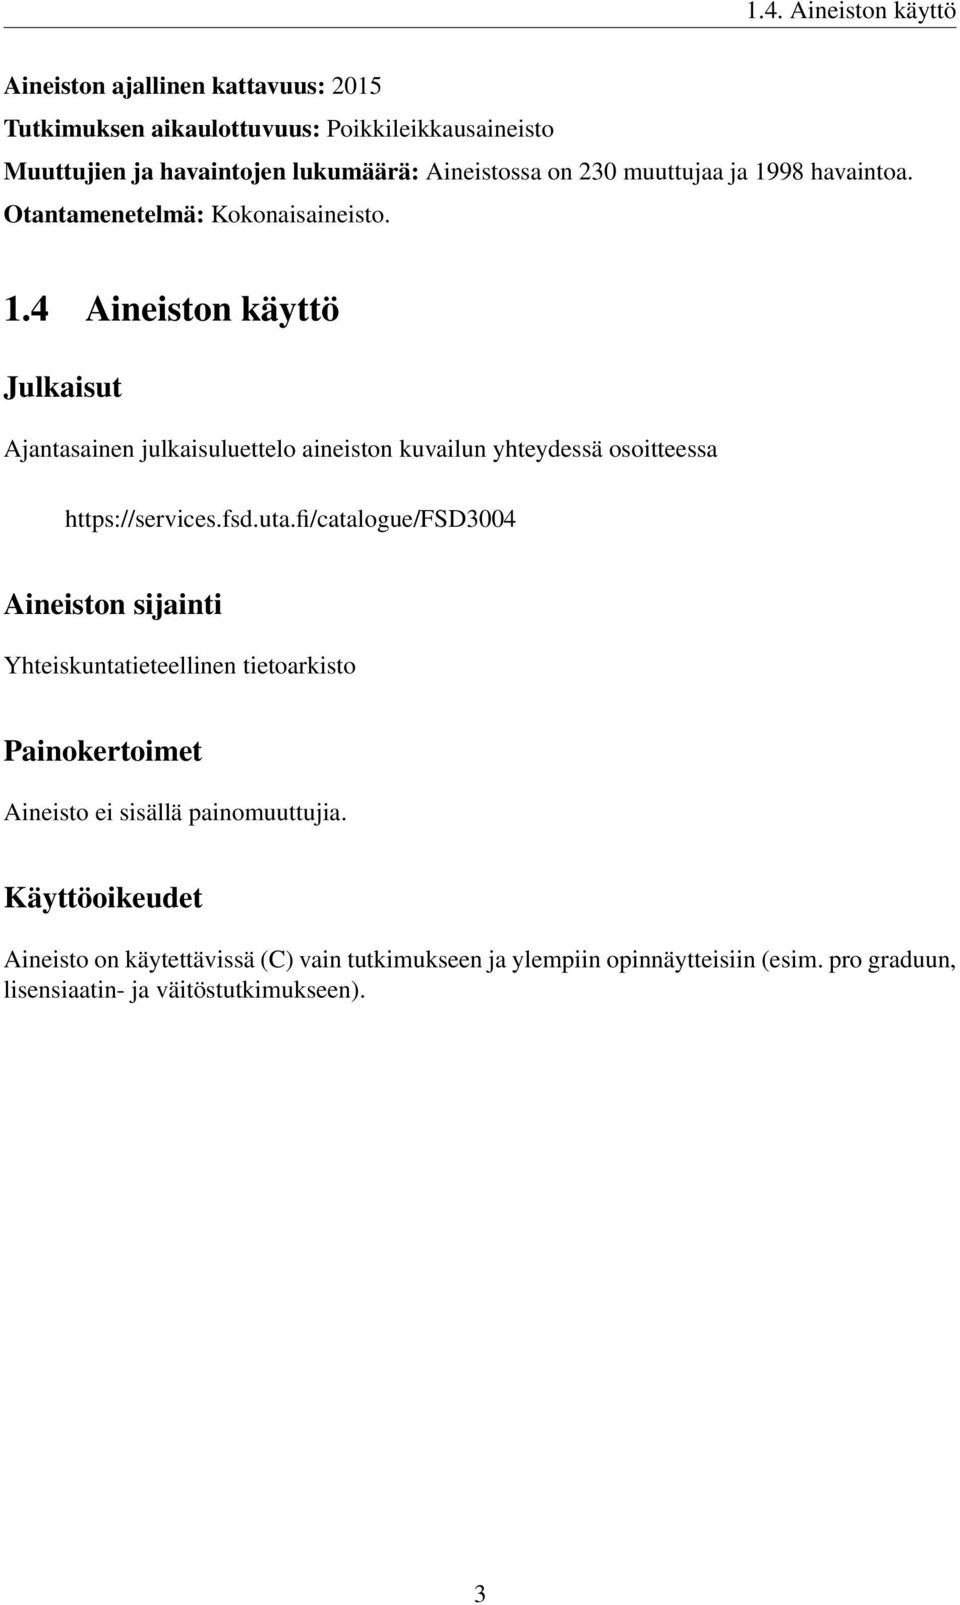 fsd.uta.fi/catalogue/fsd3004 Aineiston sijainti Yhteiskuntatieteellinen tietoarkisto Painokertoimet Aineisto ei sisällä painomuuttujia.